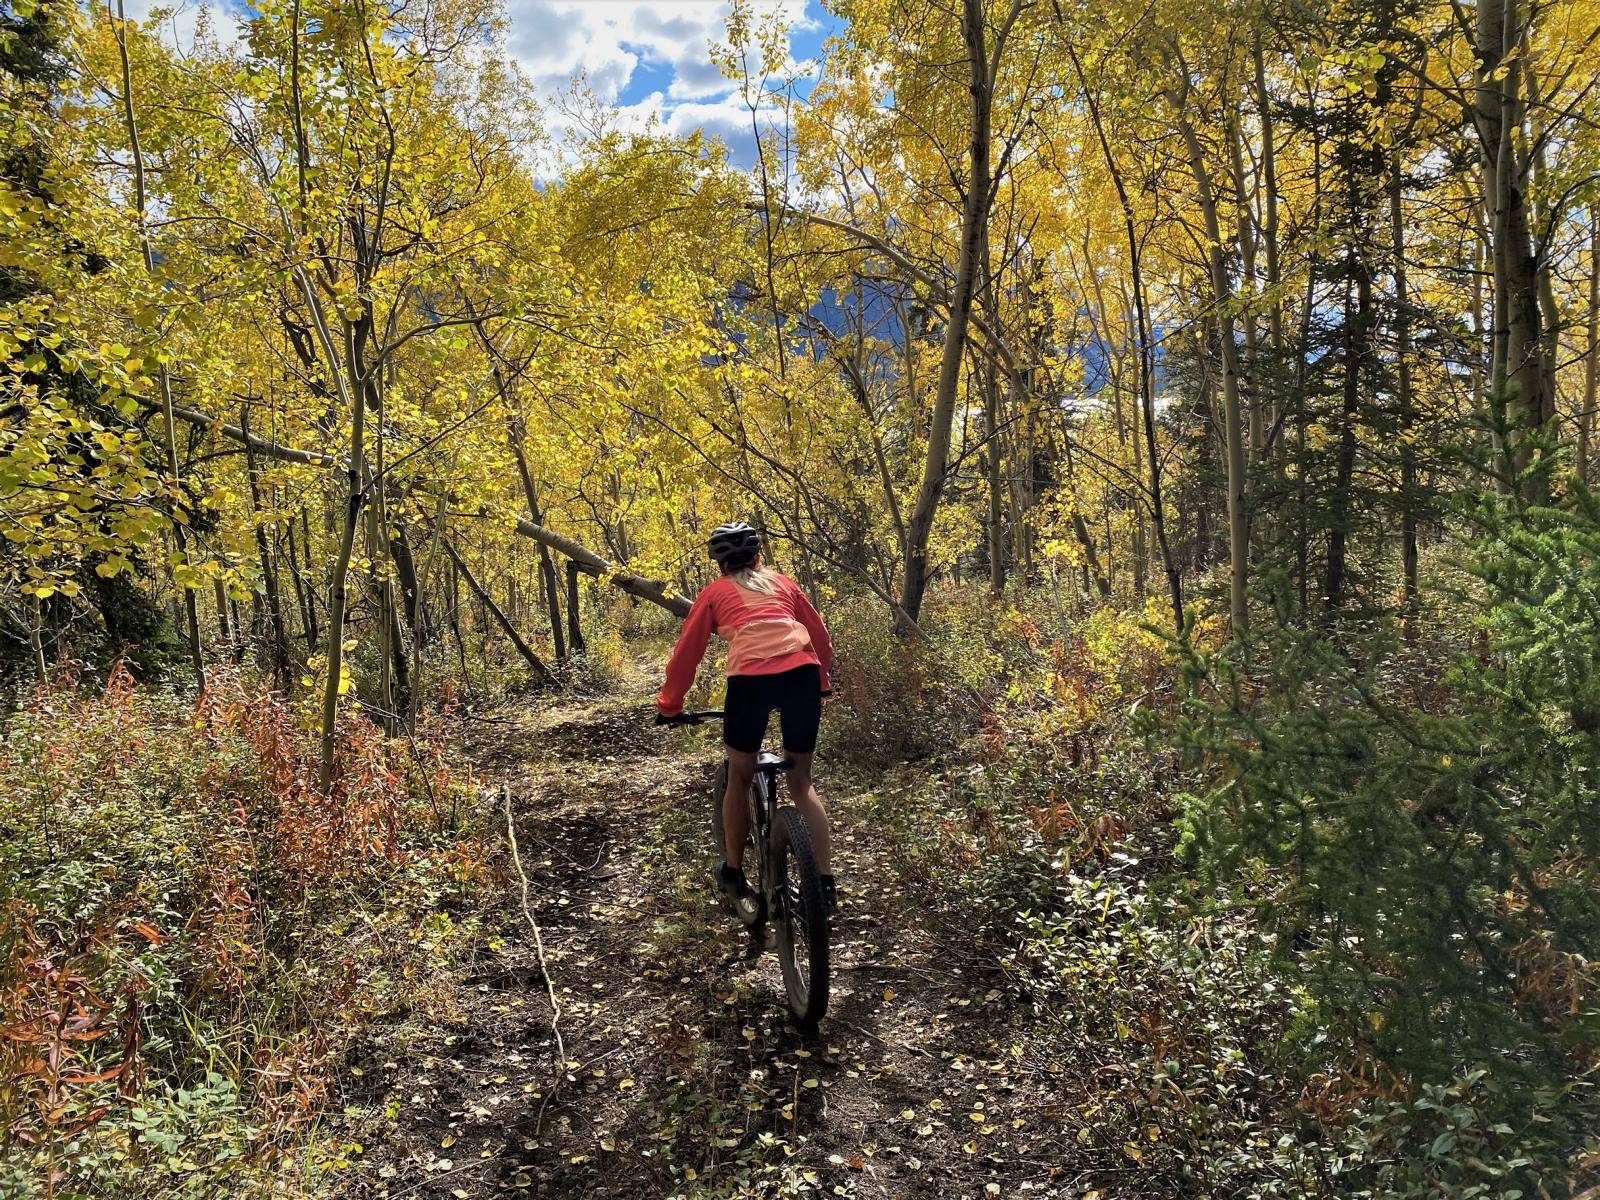 A woman mountainbiking down a trail through the forest